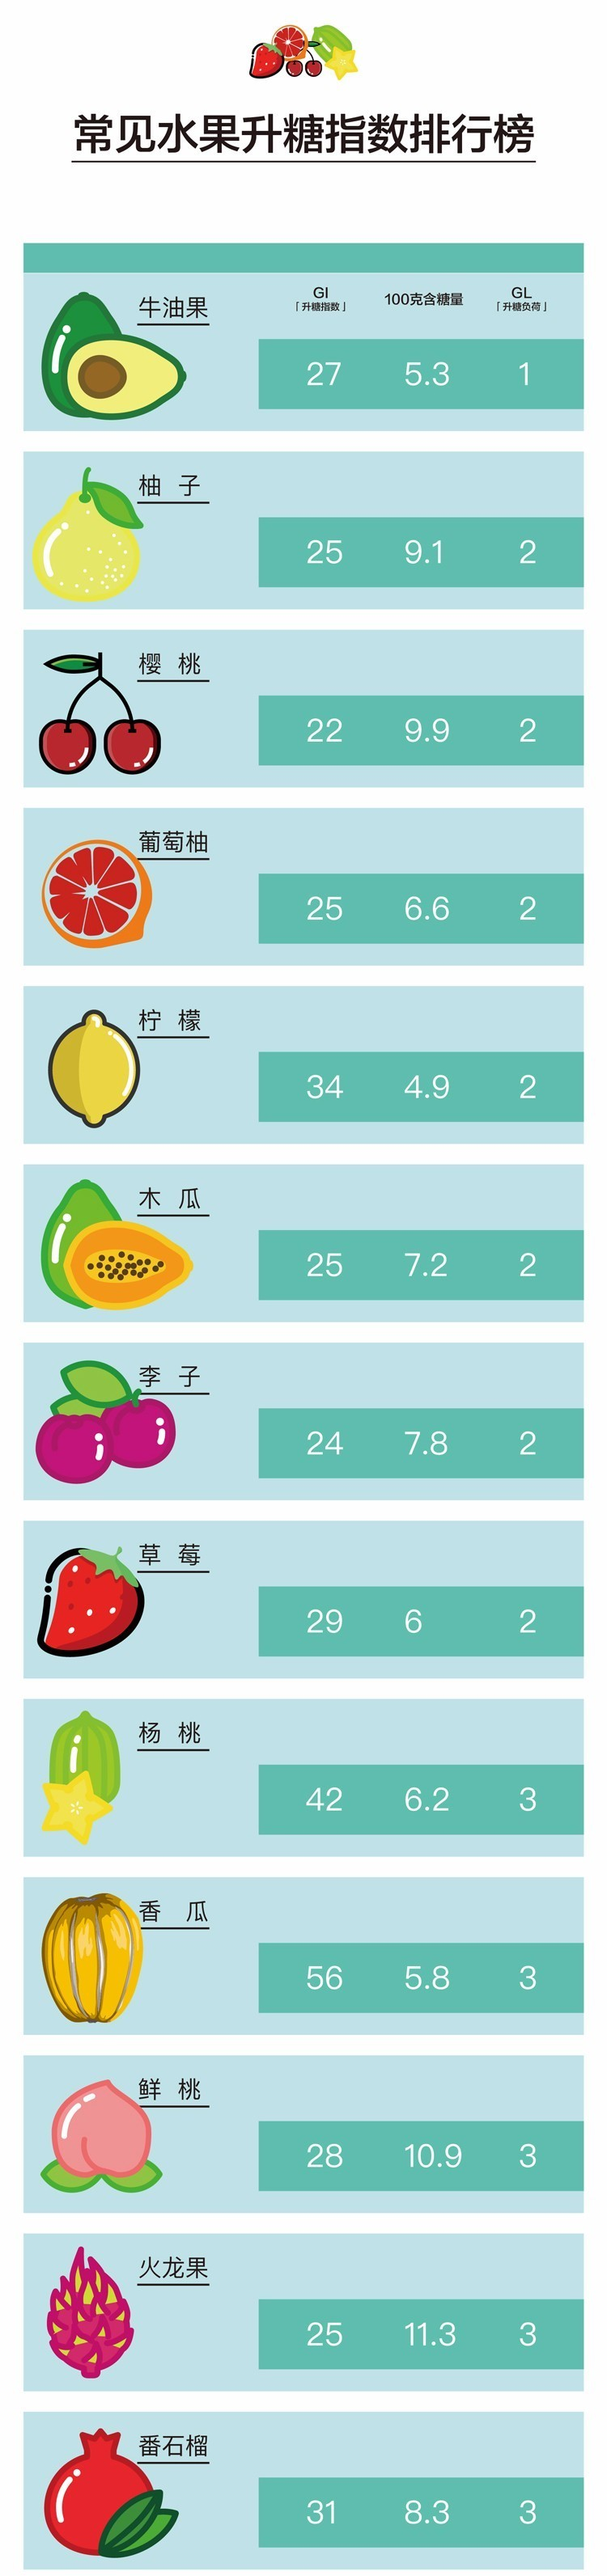 水果含糖量高,为什么还建议糖尿病人吃水果?